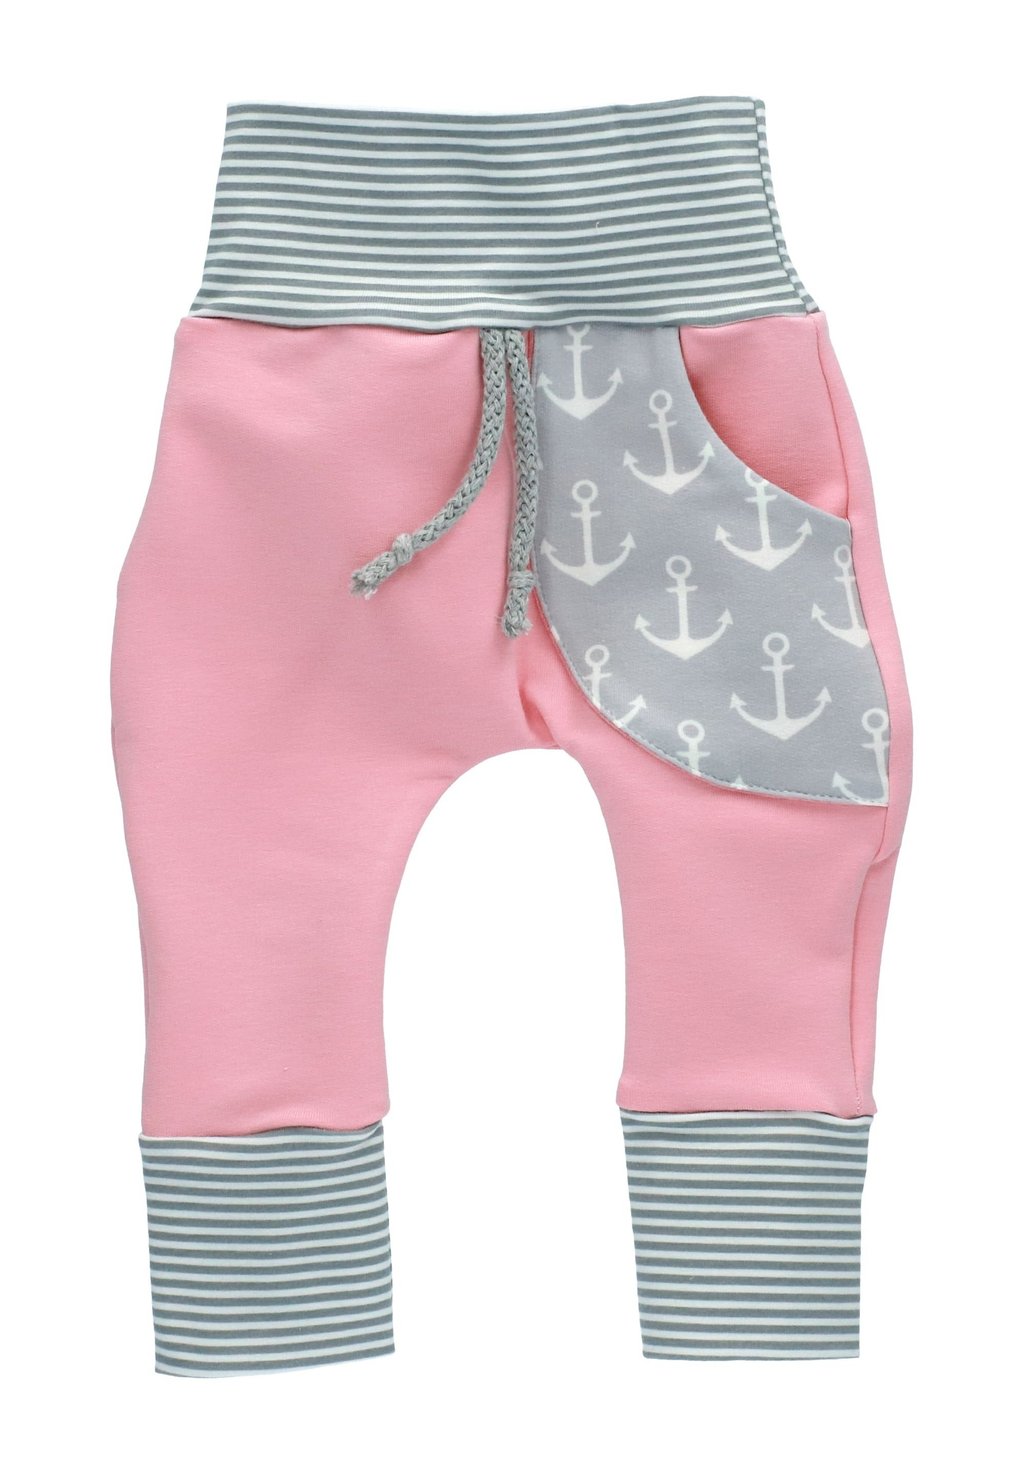 Брюки из ткани Puschel-Design, цвет weiß grau rosa брюки из ткани puschel design цвет grau dunkelblau